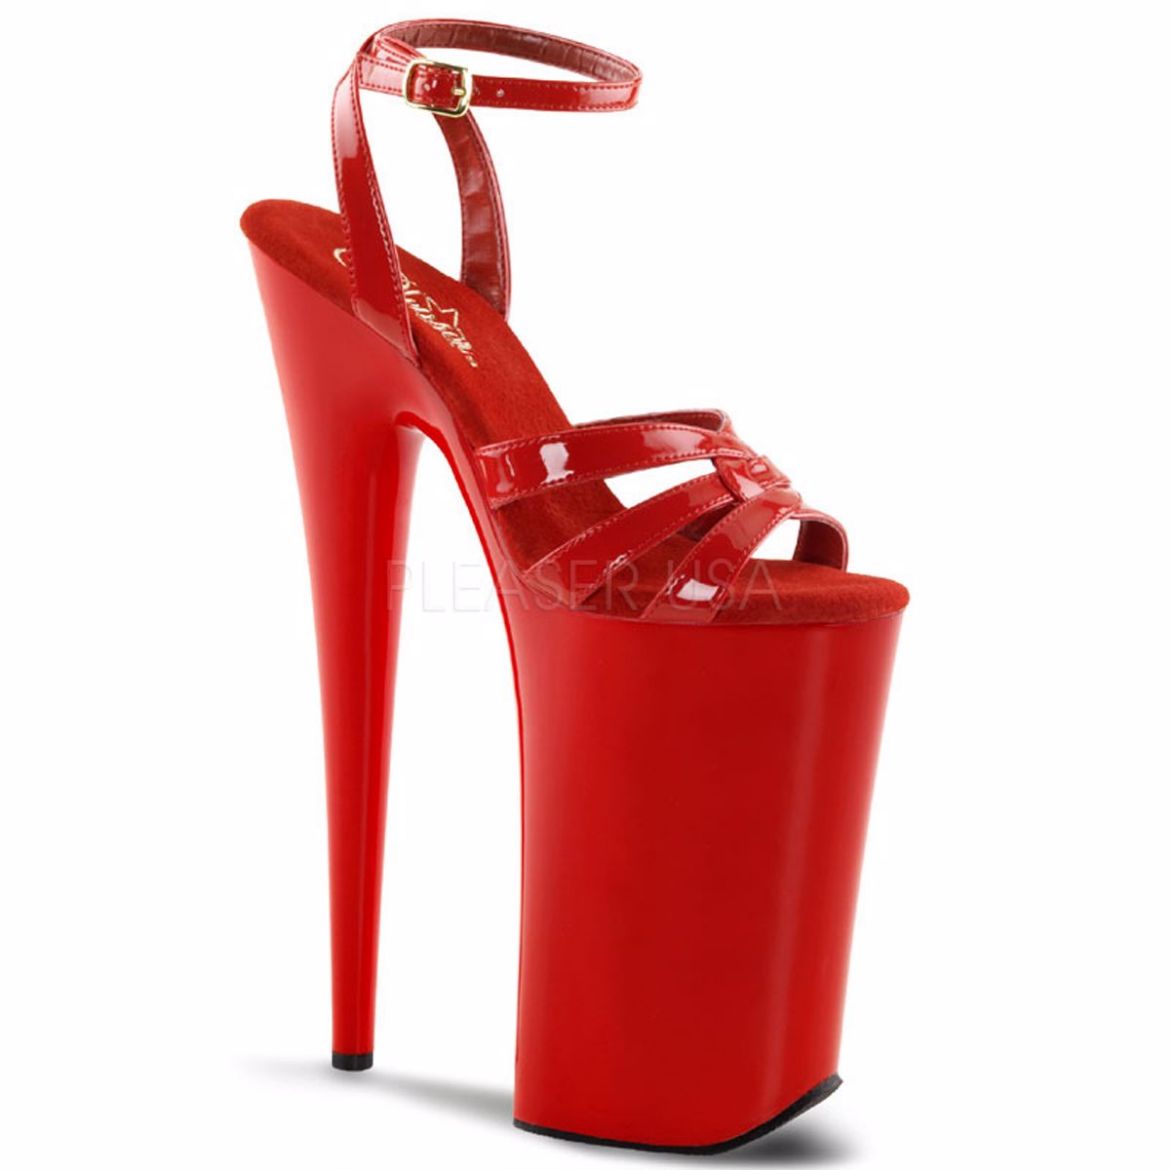 My 5 inch heels | The Junoesque